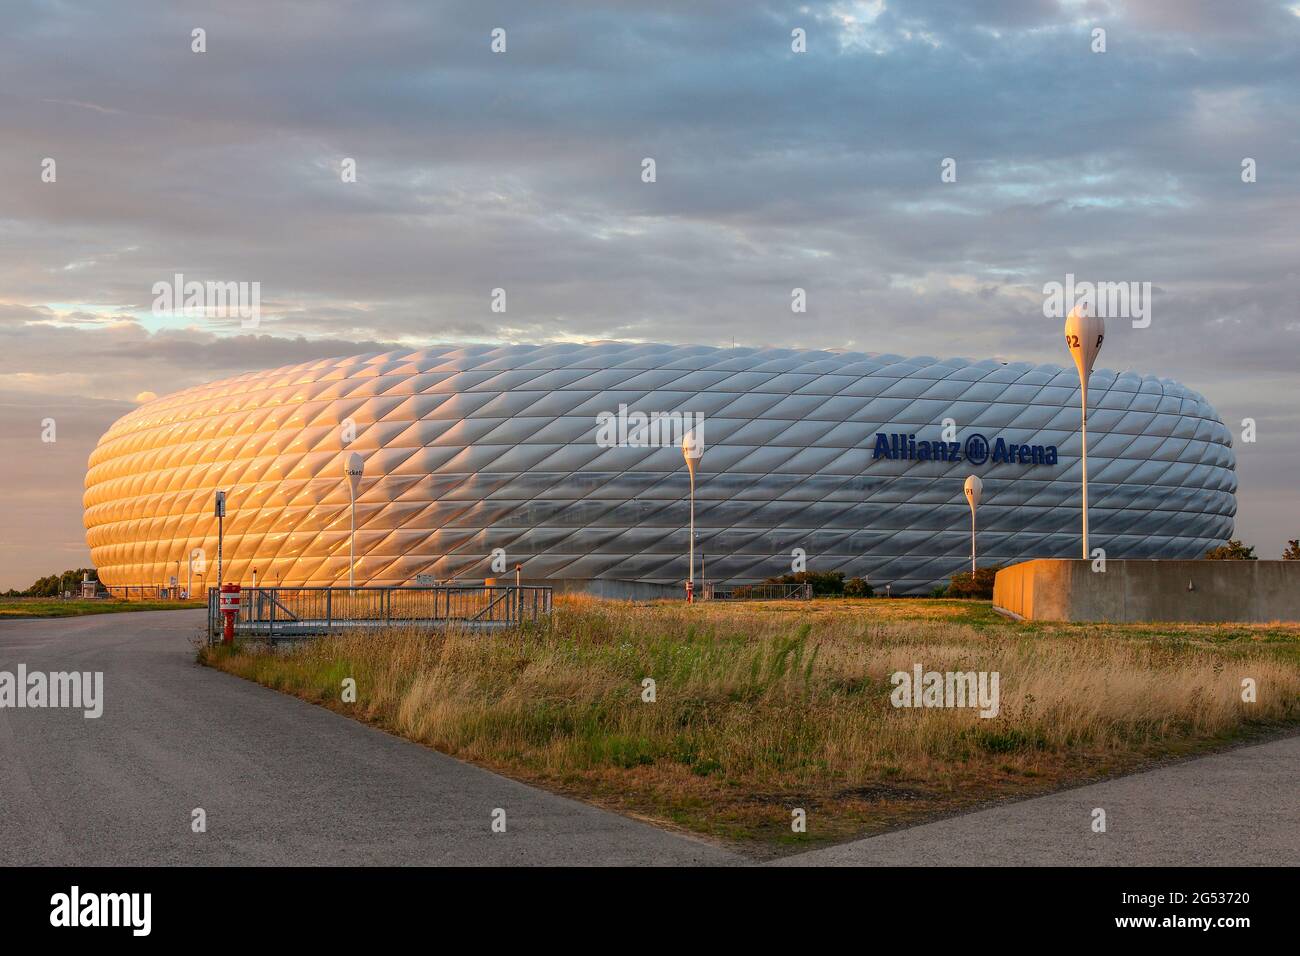 L'Allianz Arena - uno stadio di calcio a Monaco, Baviera, Germania con una capacità di 75,000 posti a sedere, terreno di casa per due professionisti Monaco di calcio cl Foto Stock